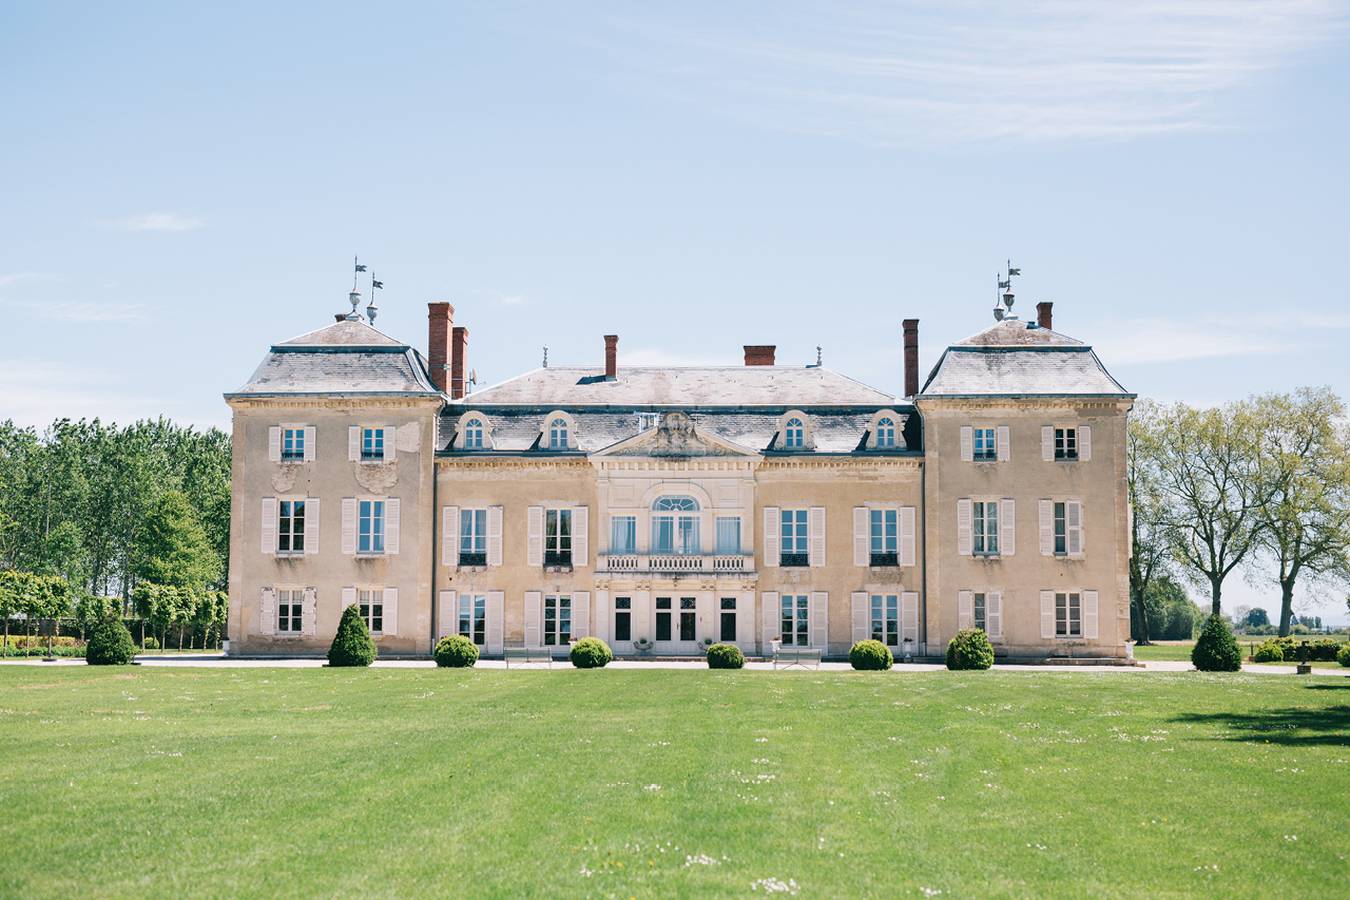 Chateau de Varenne Sauveterre, Languedoc Rouissilon - France